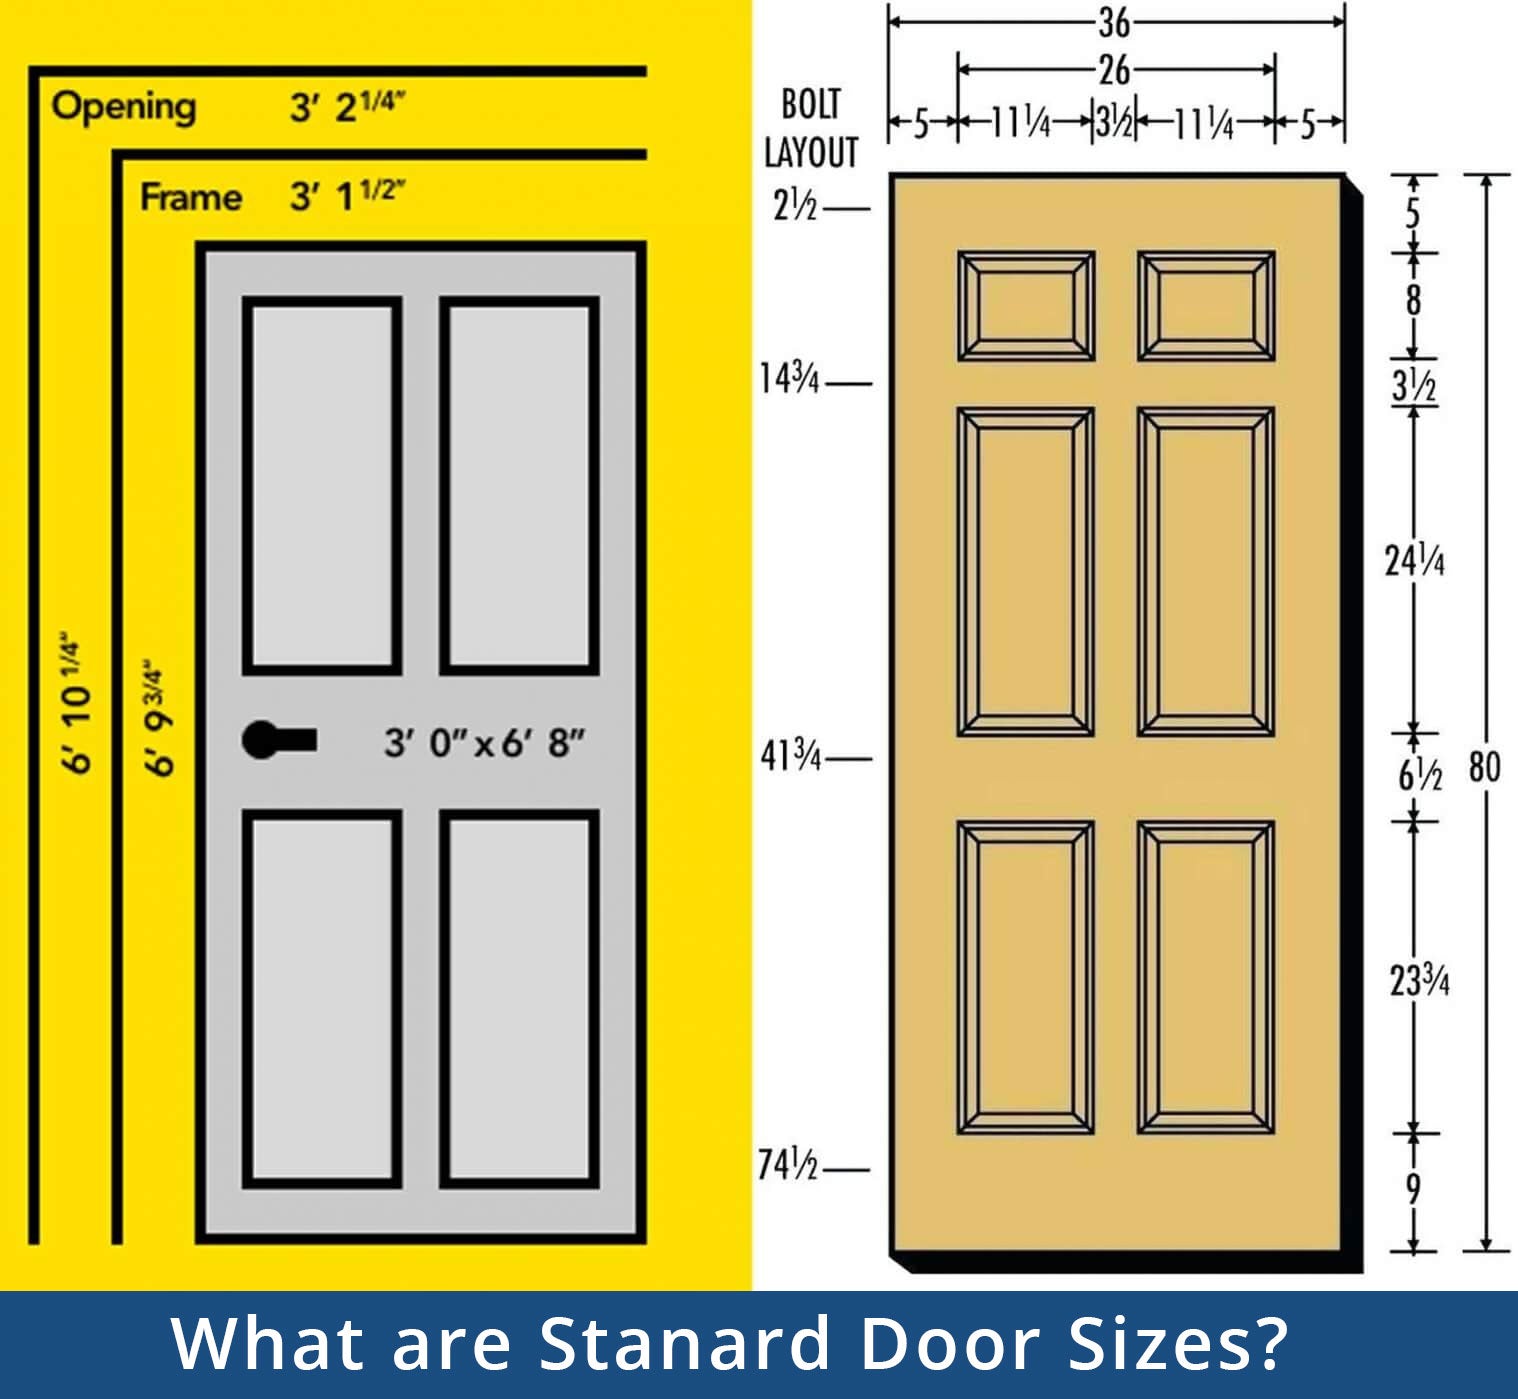 Standard Interior Door Sizes